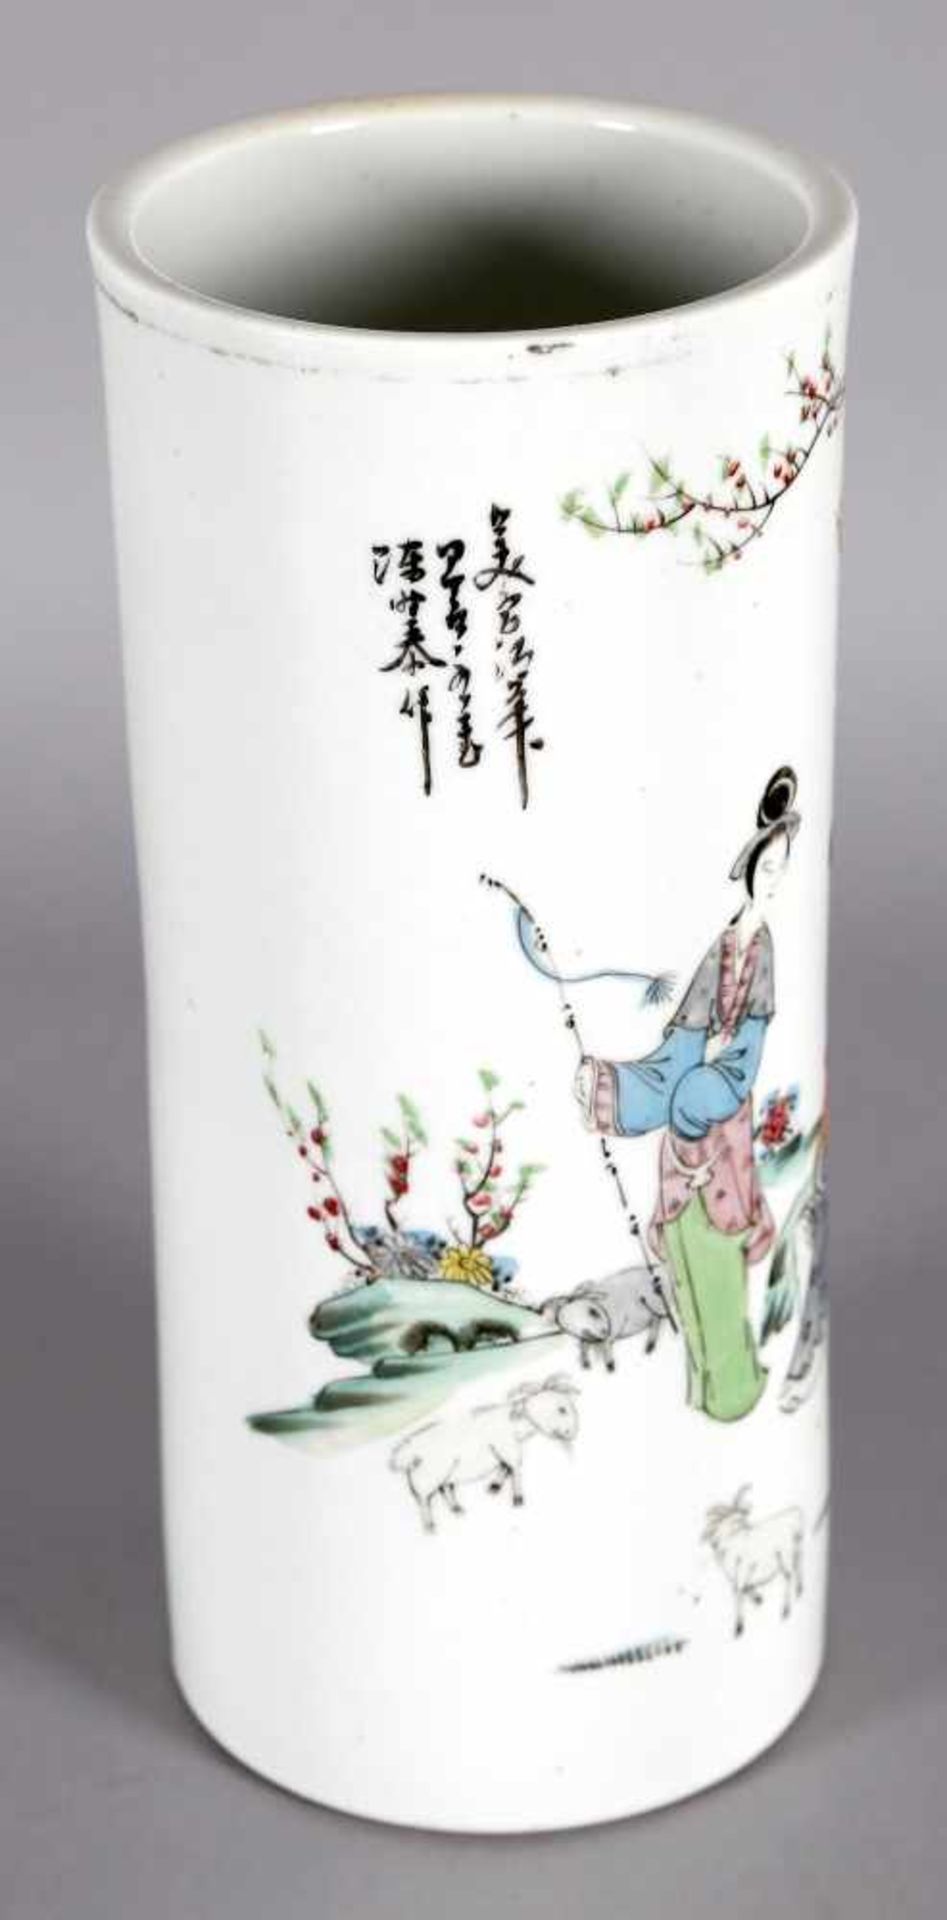 Vase mit Schäferin in Landschaft, China, 19./20. Jh.zylindrische Form, polychromer Dekor in - Bild 2 aus 2